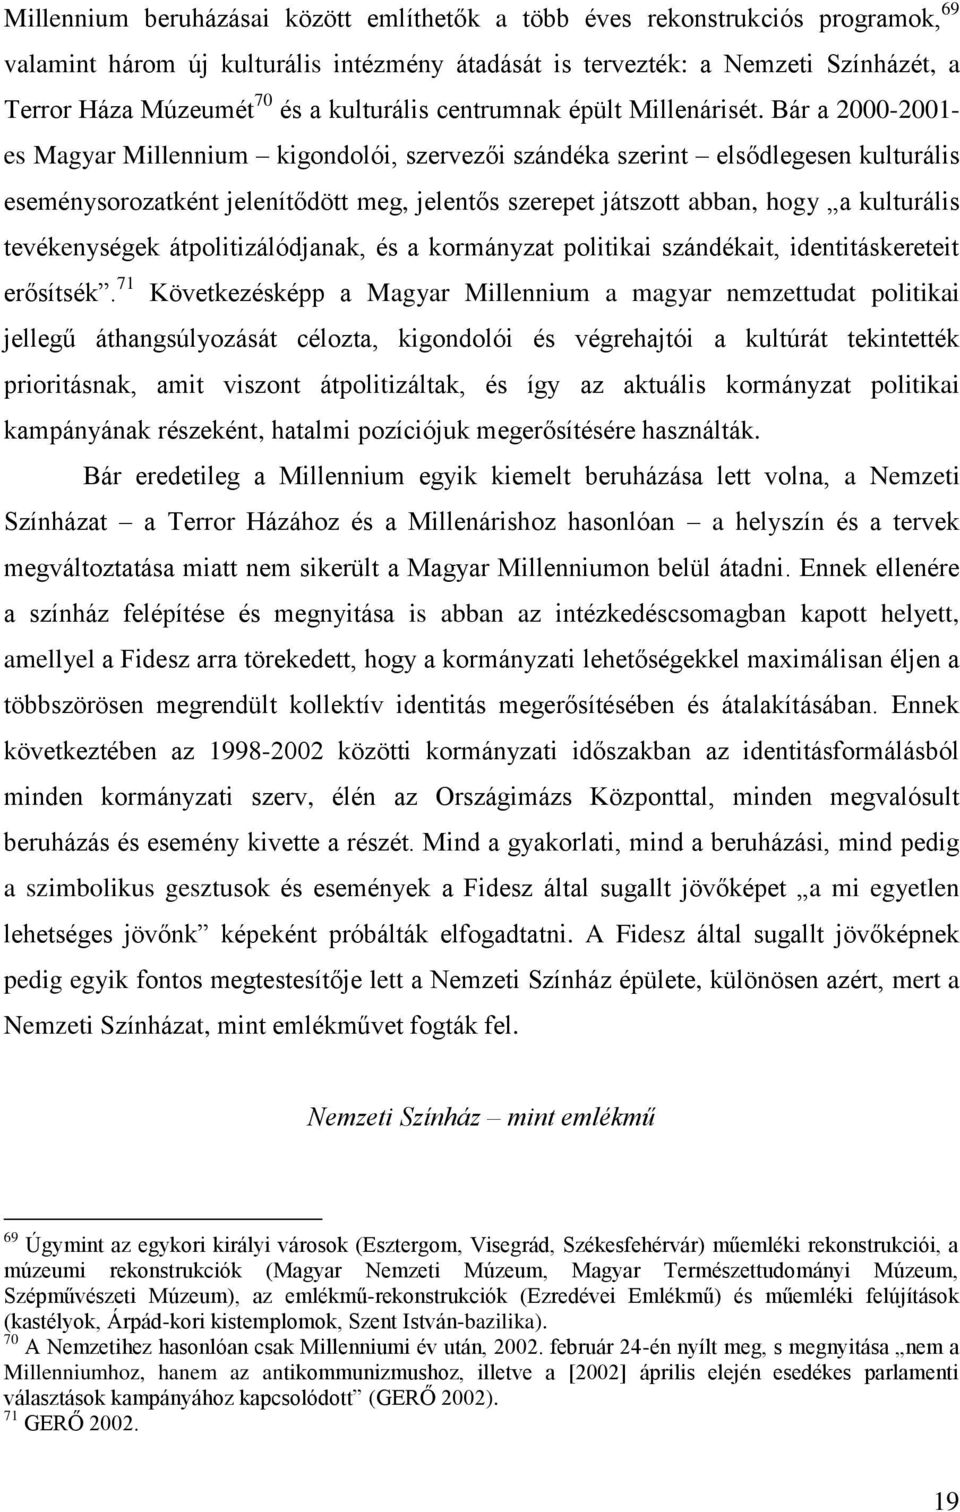 Bár a 2000-2001- es Magyar Millennium kigondolói, szervezői szándéka szerint elsődlegesen kulturális eseménysorozatként jelenítődött meg, jelentős szerepet játszott abban, hogy a kulturális